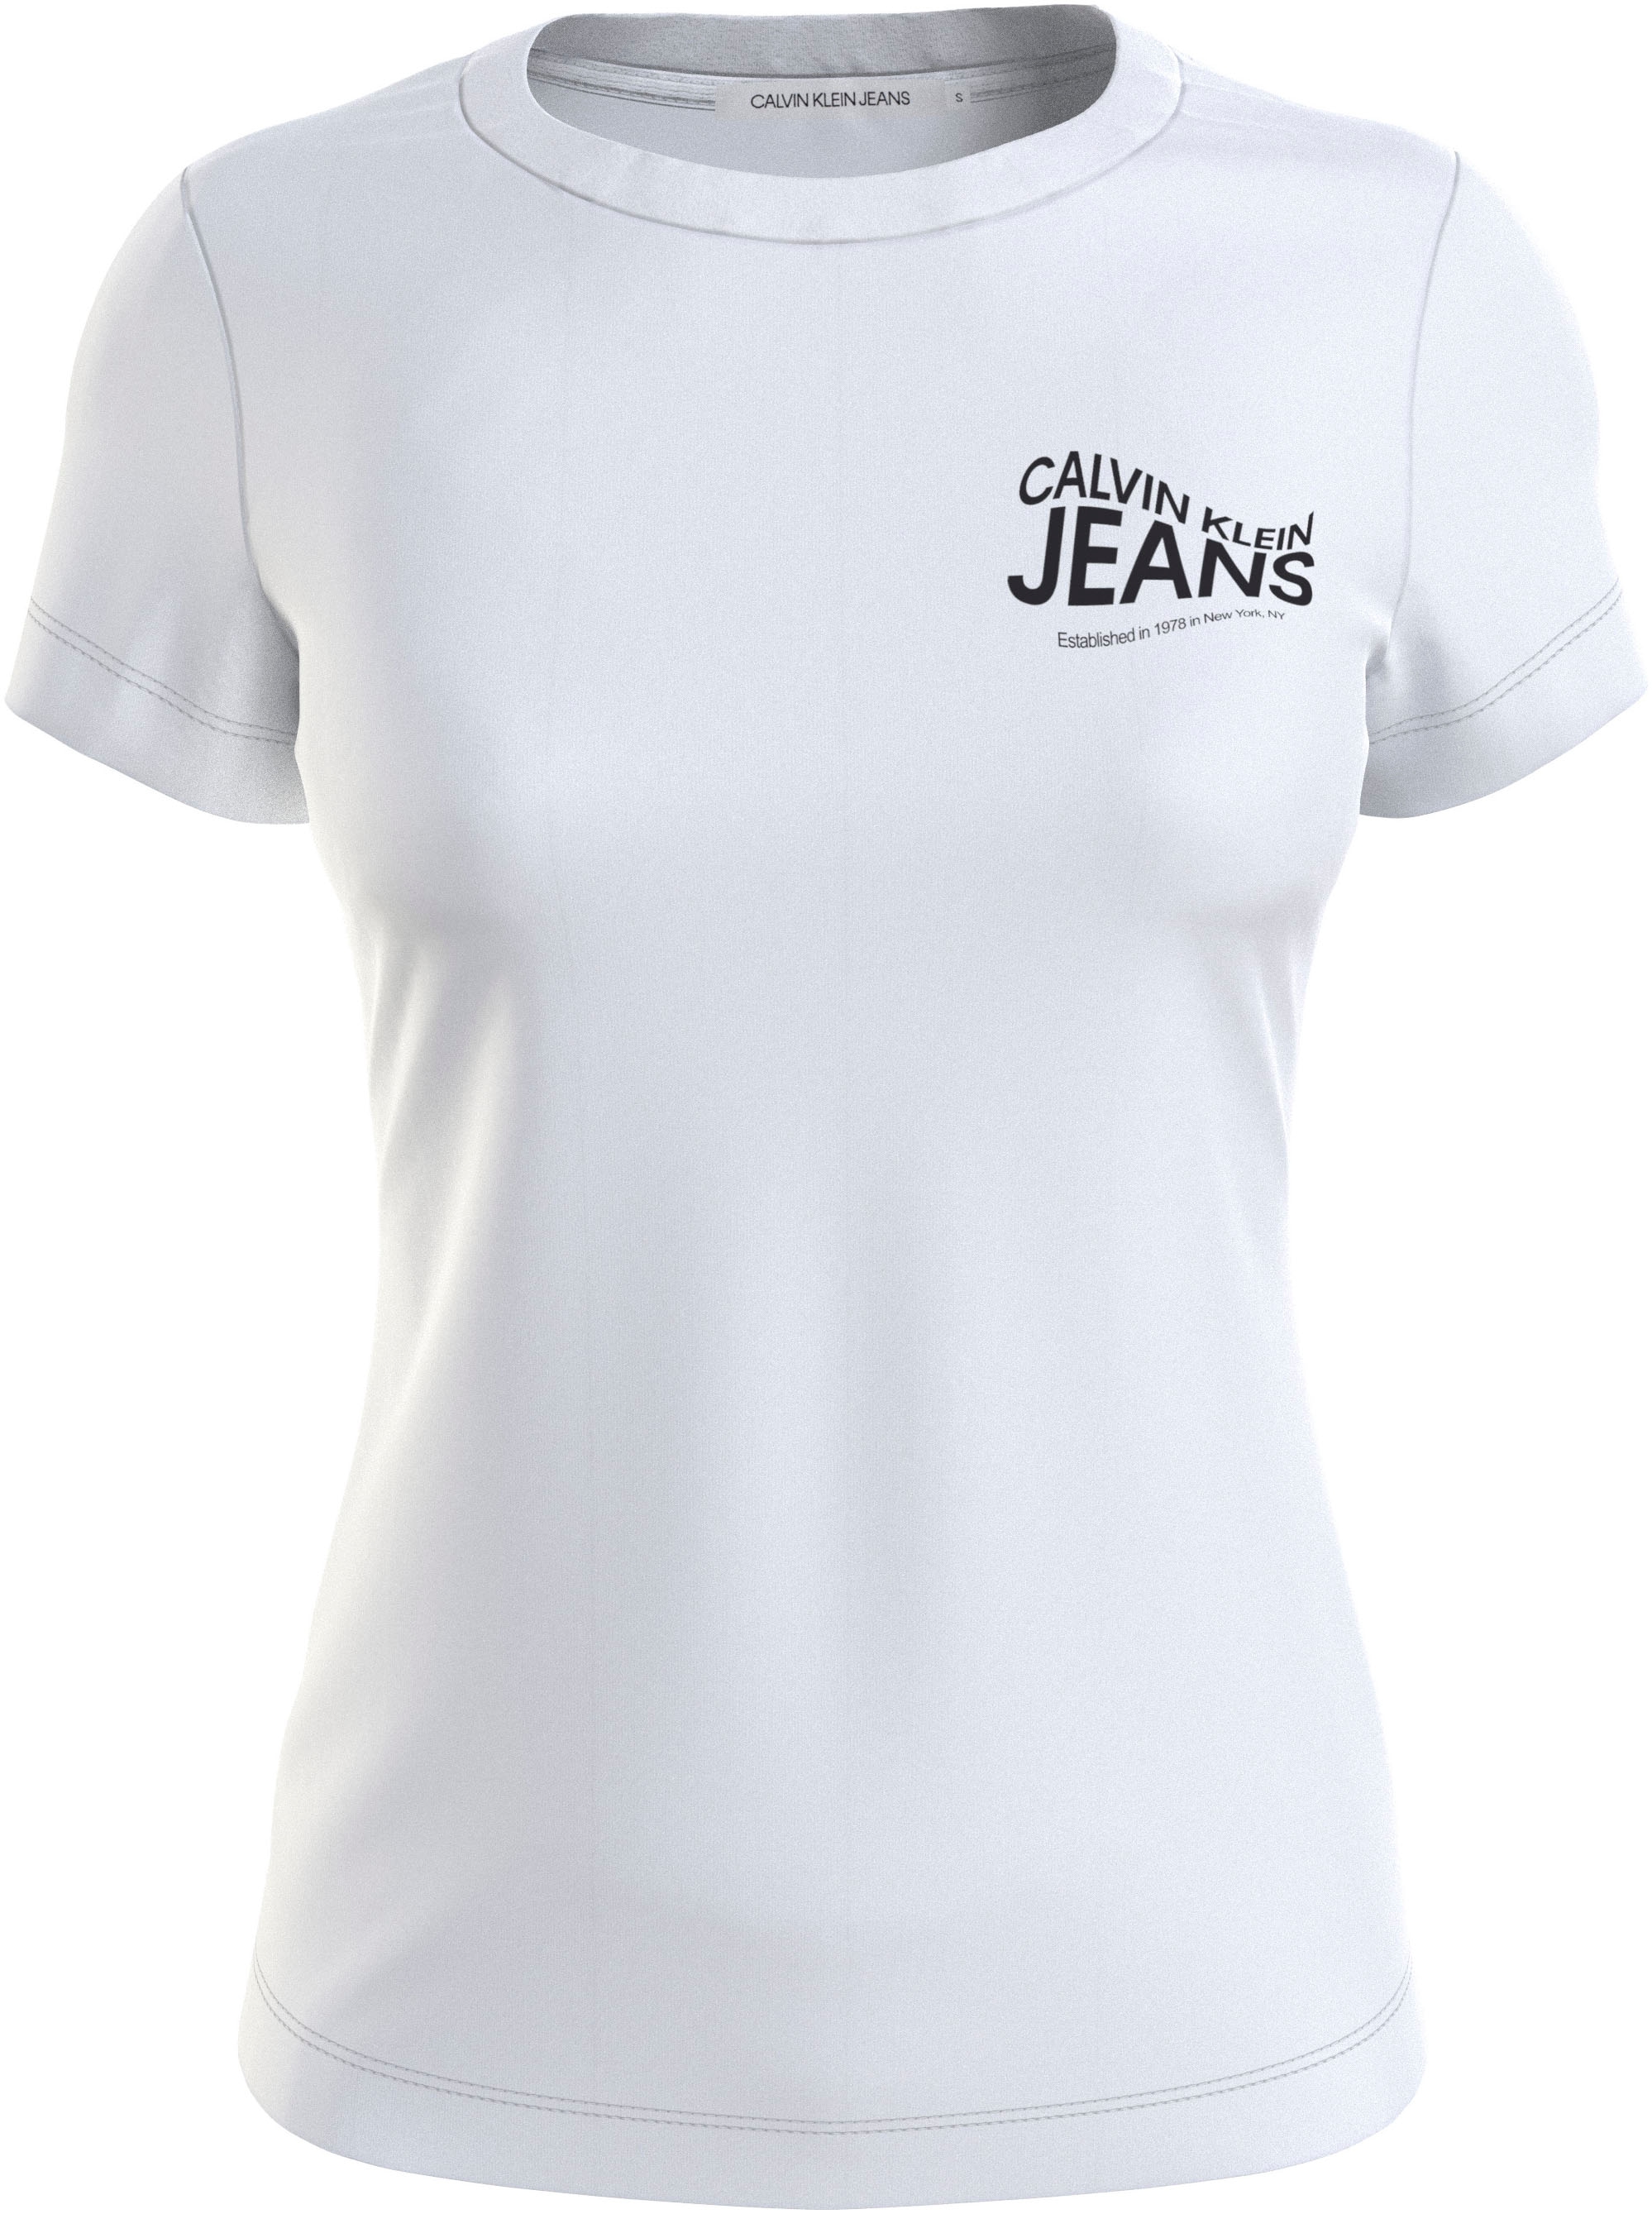 Calvin Klein Jeans T-Shirt kaufen I\'m walking 